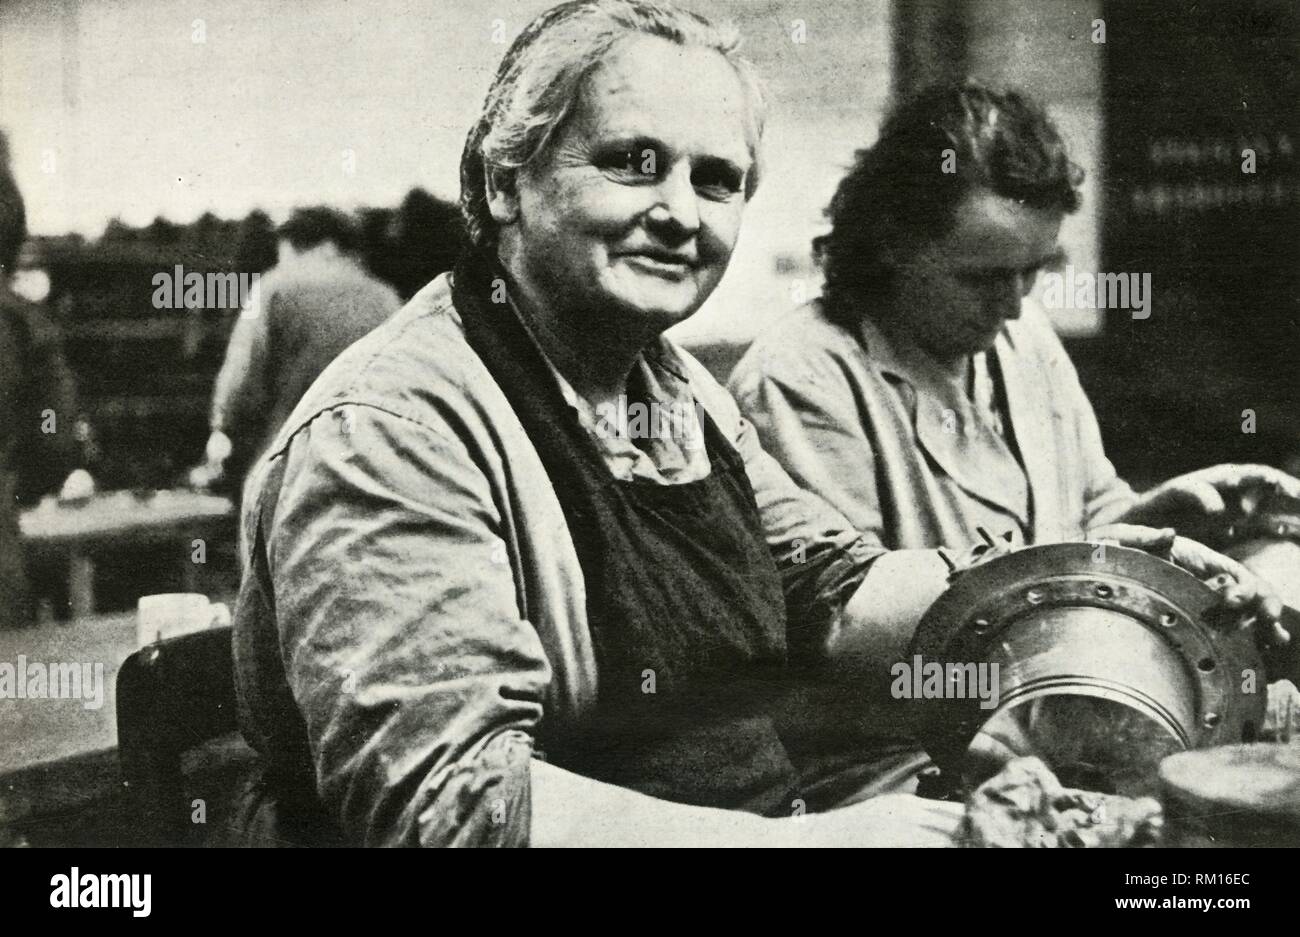 Frauen, Wartung und Reparatur von Flugzeugen Arbeiter, South Wales, Weltkrieg II, c 1939 - c 1944 (1946). Schöpfer: Unbekannt. Stockfoto